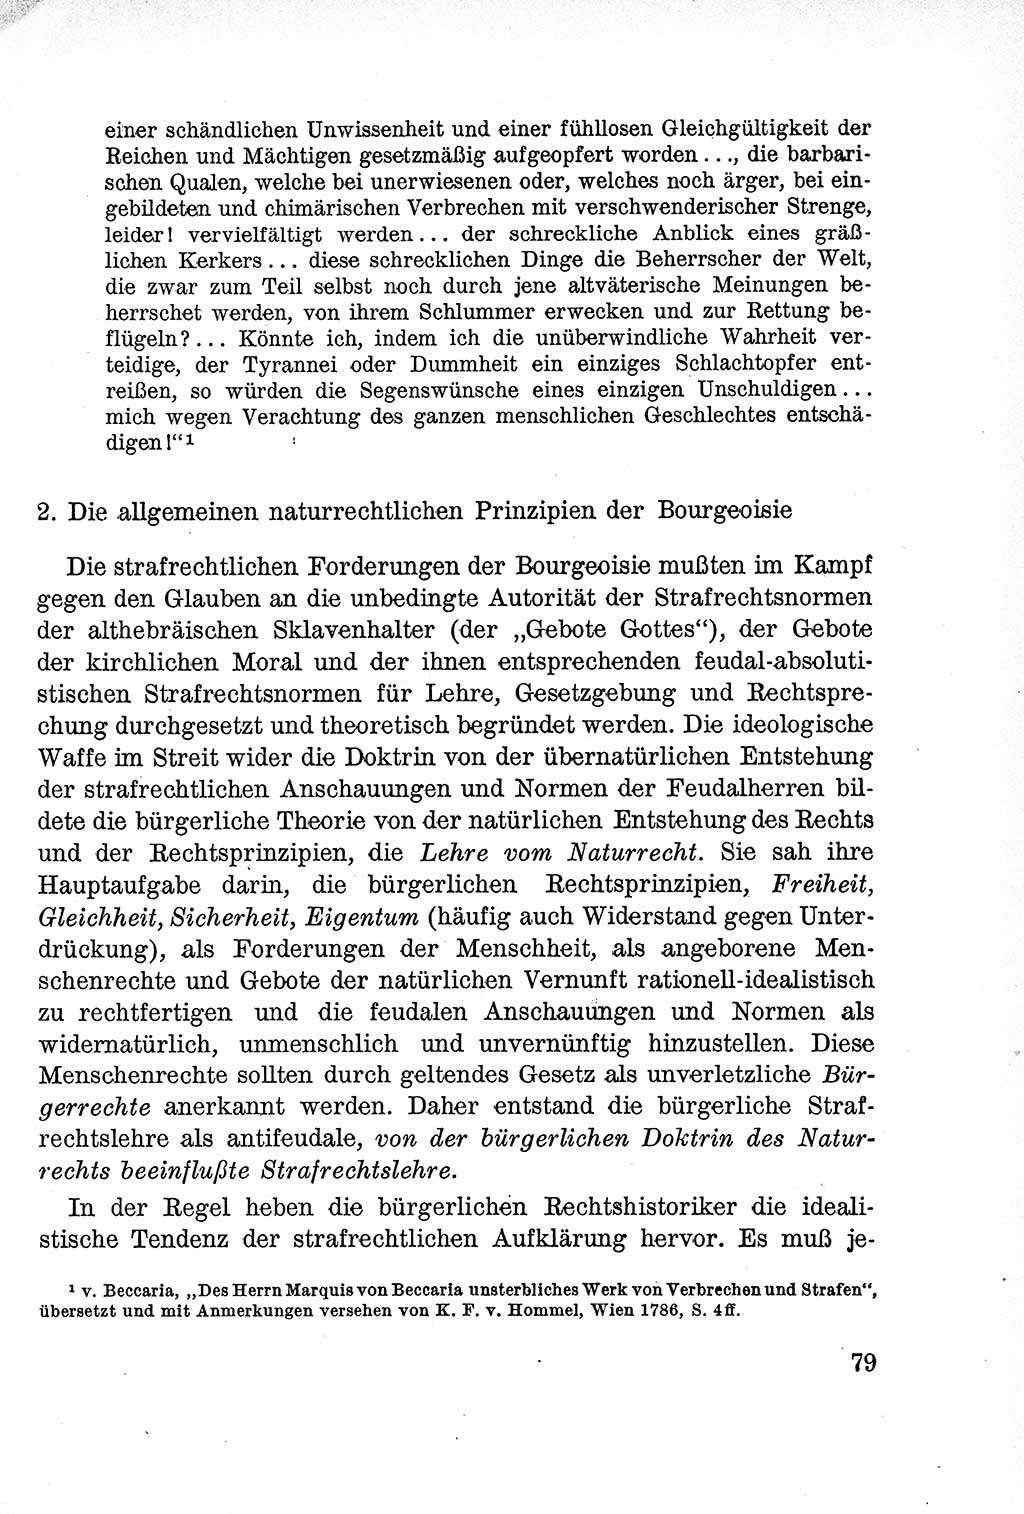 Lehrbuch des Strafrechts der Deutschen Demokratischen Republik (DDR), Allgemeiner Teil 1957, Seite 79 (Lb. Strafr. DDR AT 1957, S. 79)